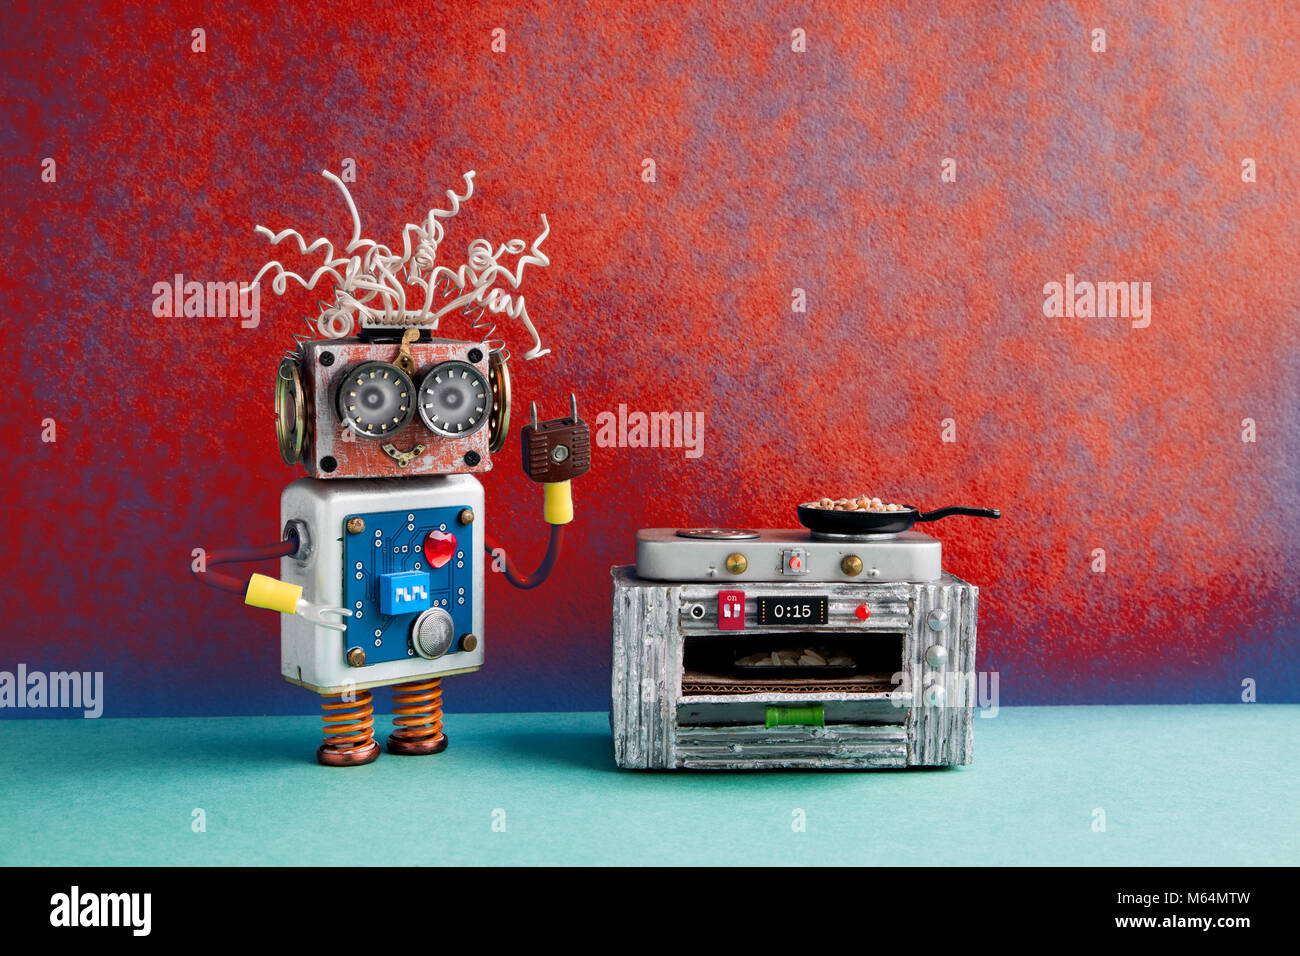 Robotic Küchenchef bereitet Mahlzeiten Bratpfanne, elektronische Herd  Backofen. Kreatives Design Roboter Spielzeug, Automation smart home  Konzept. Rot Blau, Grün, Hintergrund Stockfotografie - Alamy